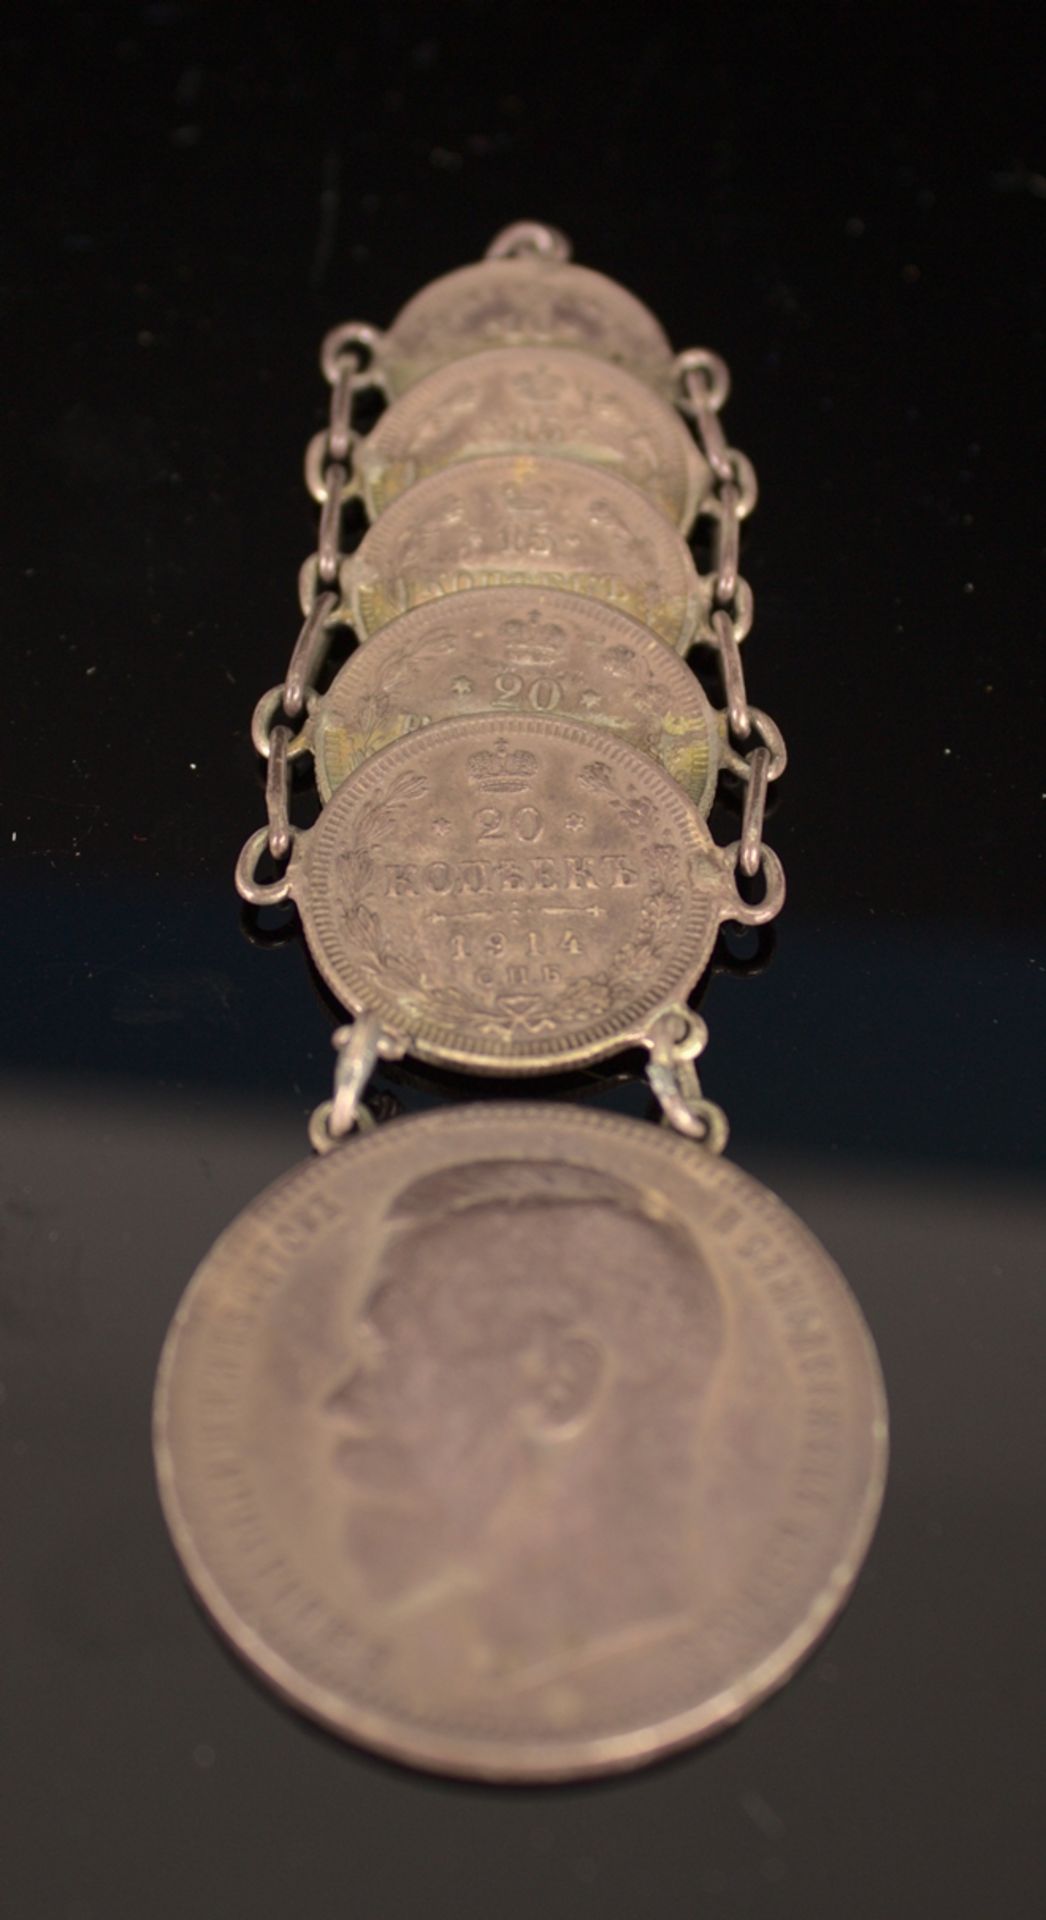 6teilige "russische Silbermünzen - Chatelaine" - Uhrenkette, bestehend aus 6 mi - Image 2 of 7